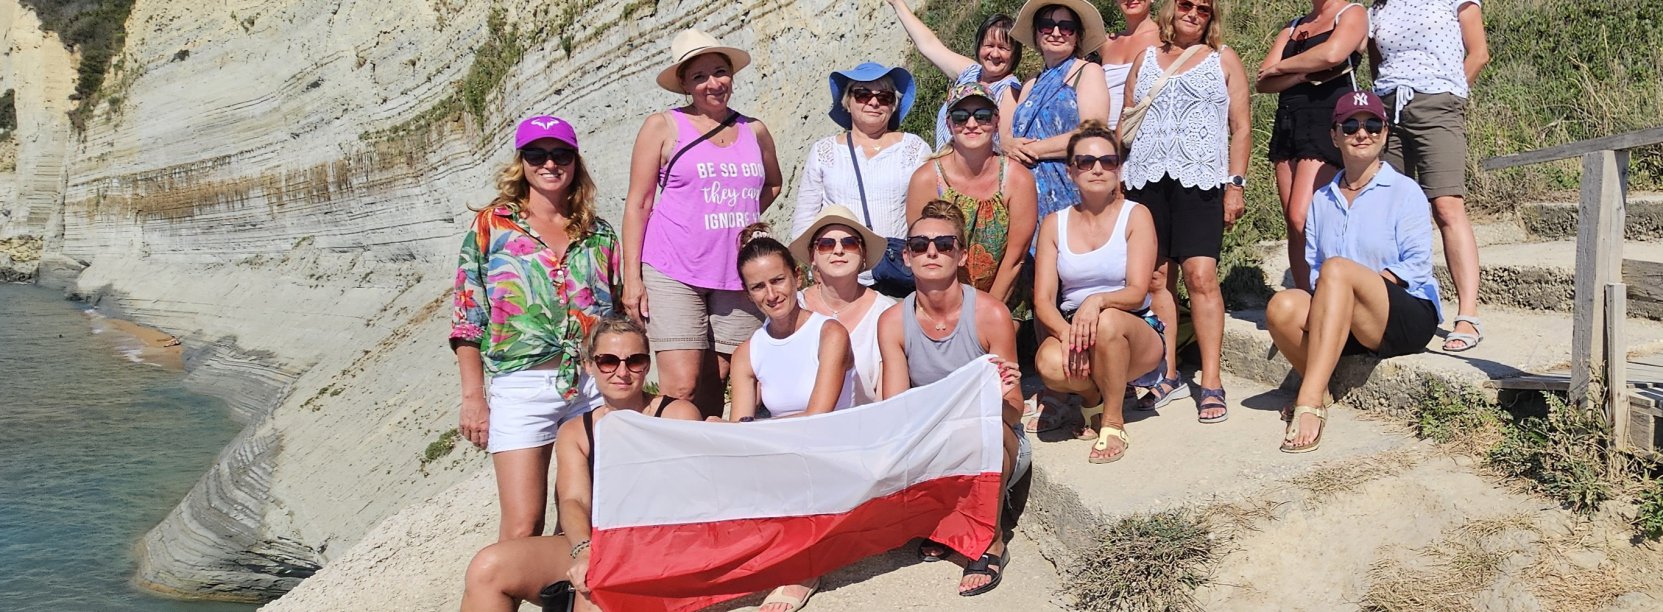 Grupa kobiet na kamenistej plaży, jedna z pań trzyma flagę Polski